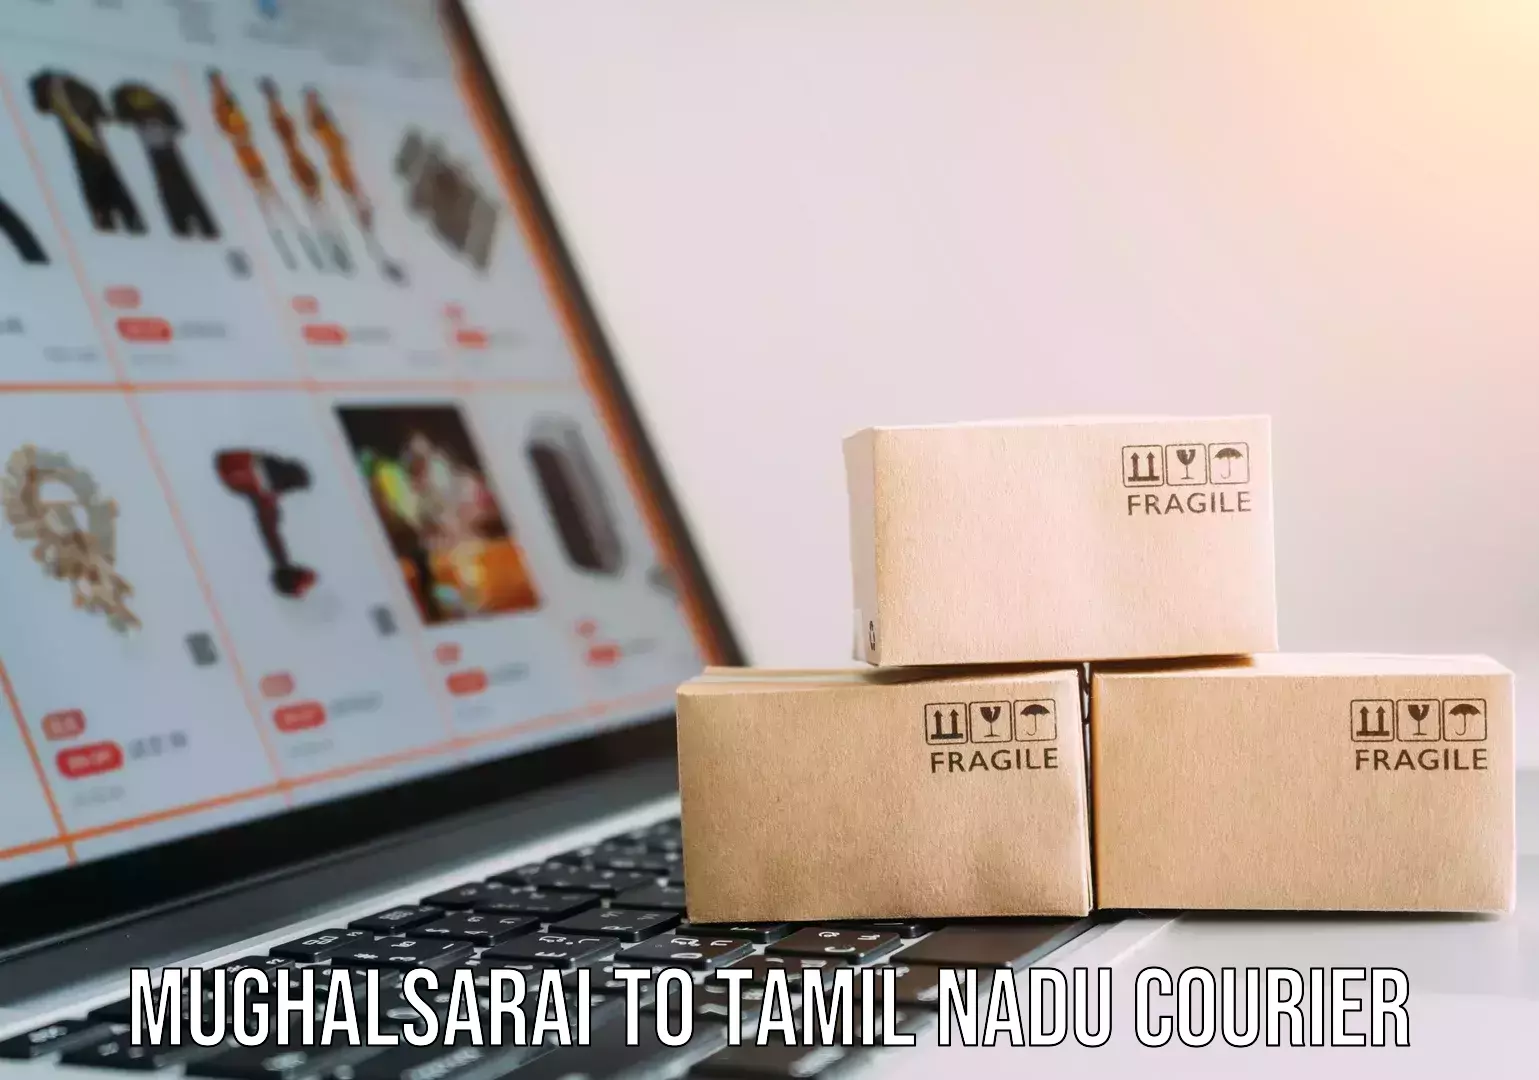 Furniture delivery service Mughalsarai to Tamil Nadu